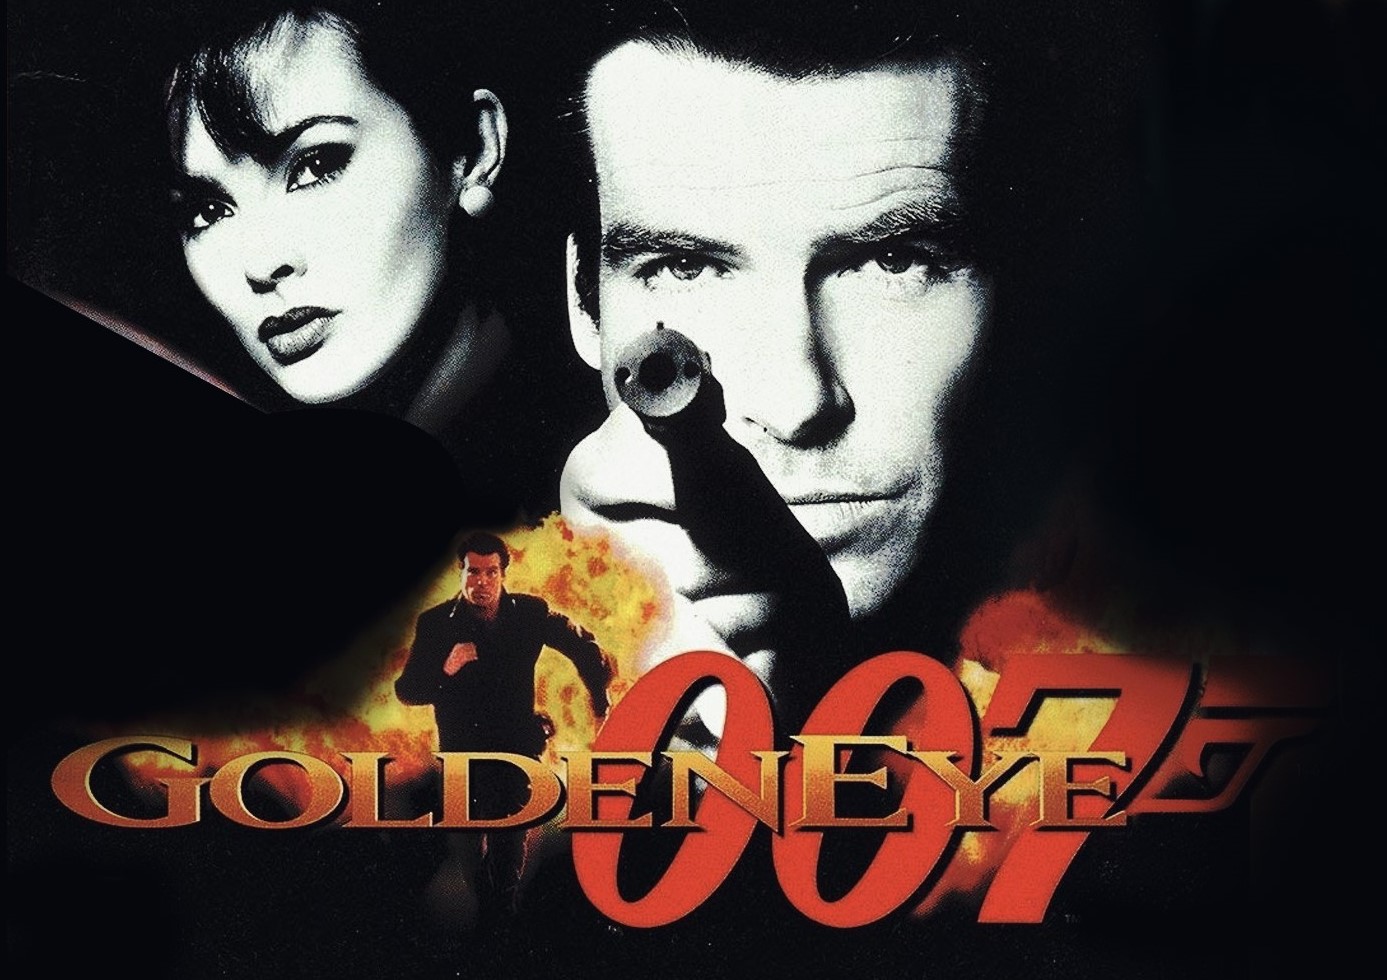 goldeneye 007 emulator